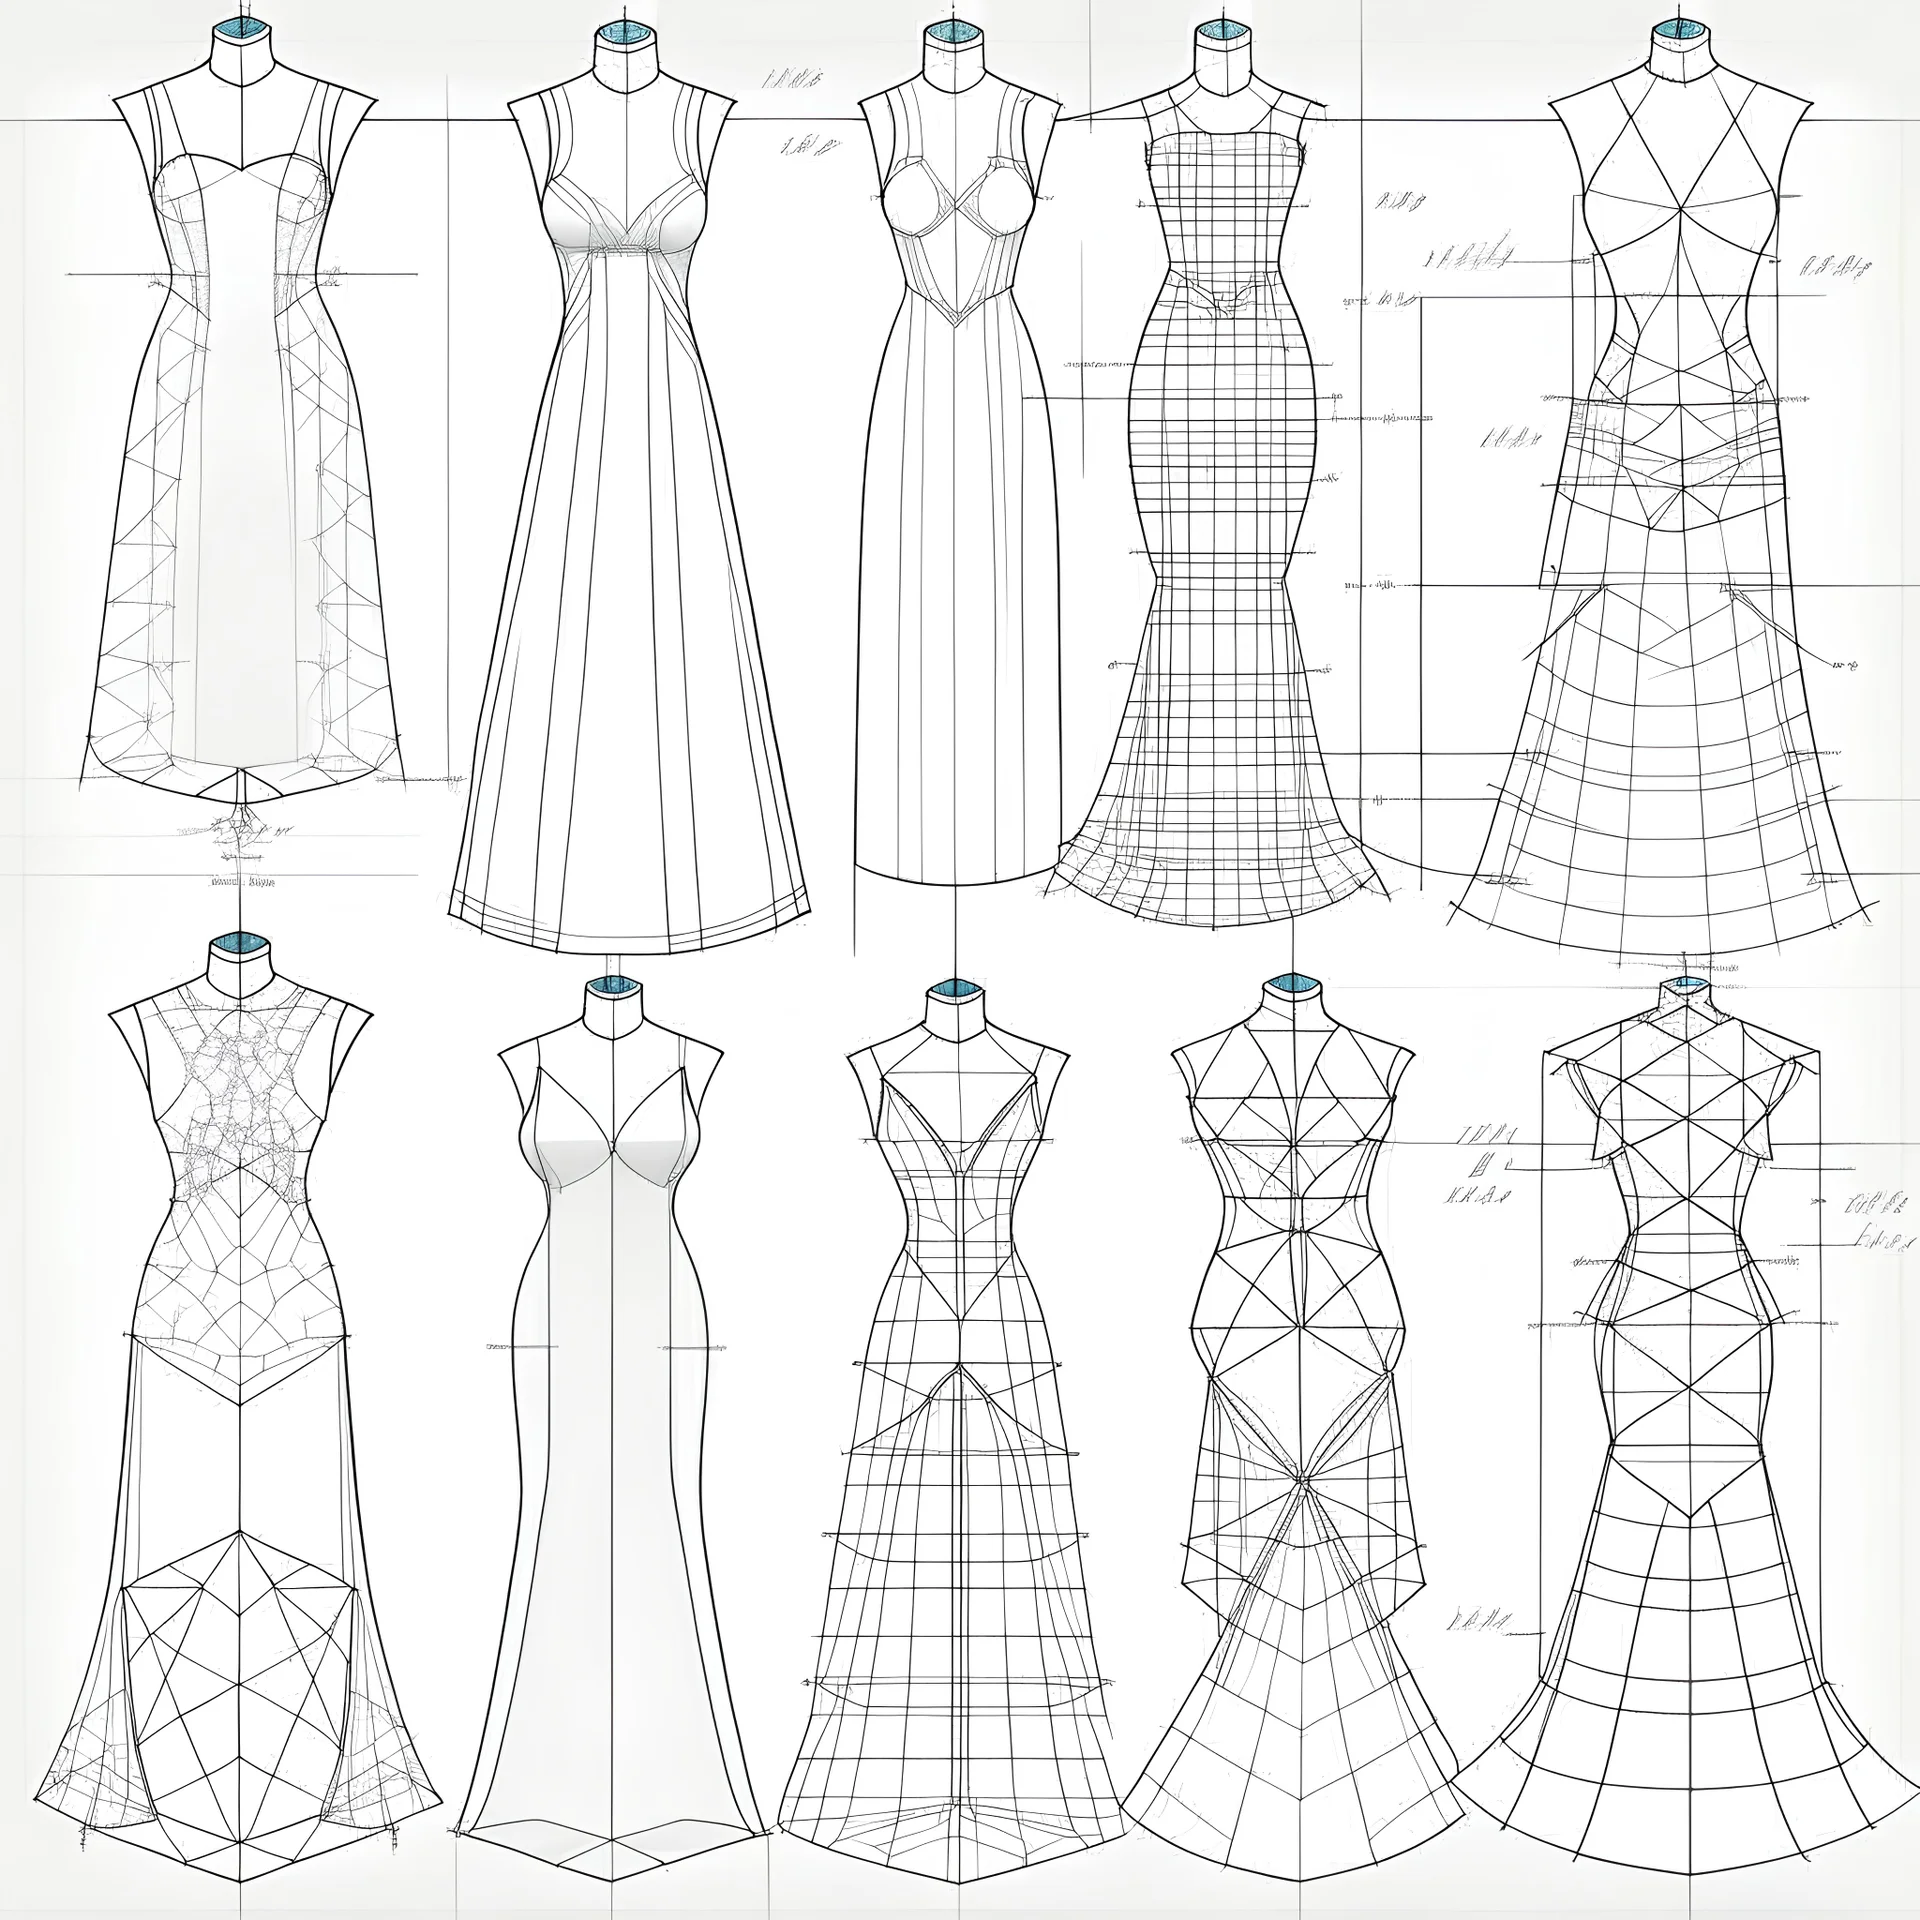 Plan Boutique Wedding Dresses Concept Grid Diamond Sketches 2D